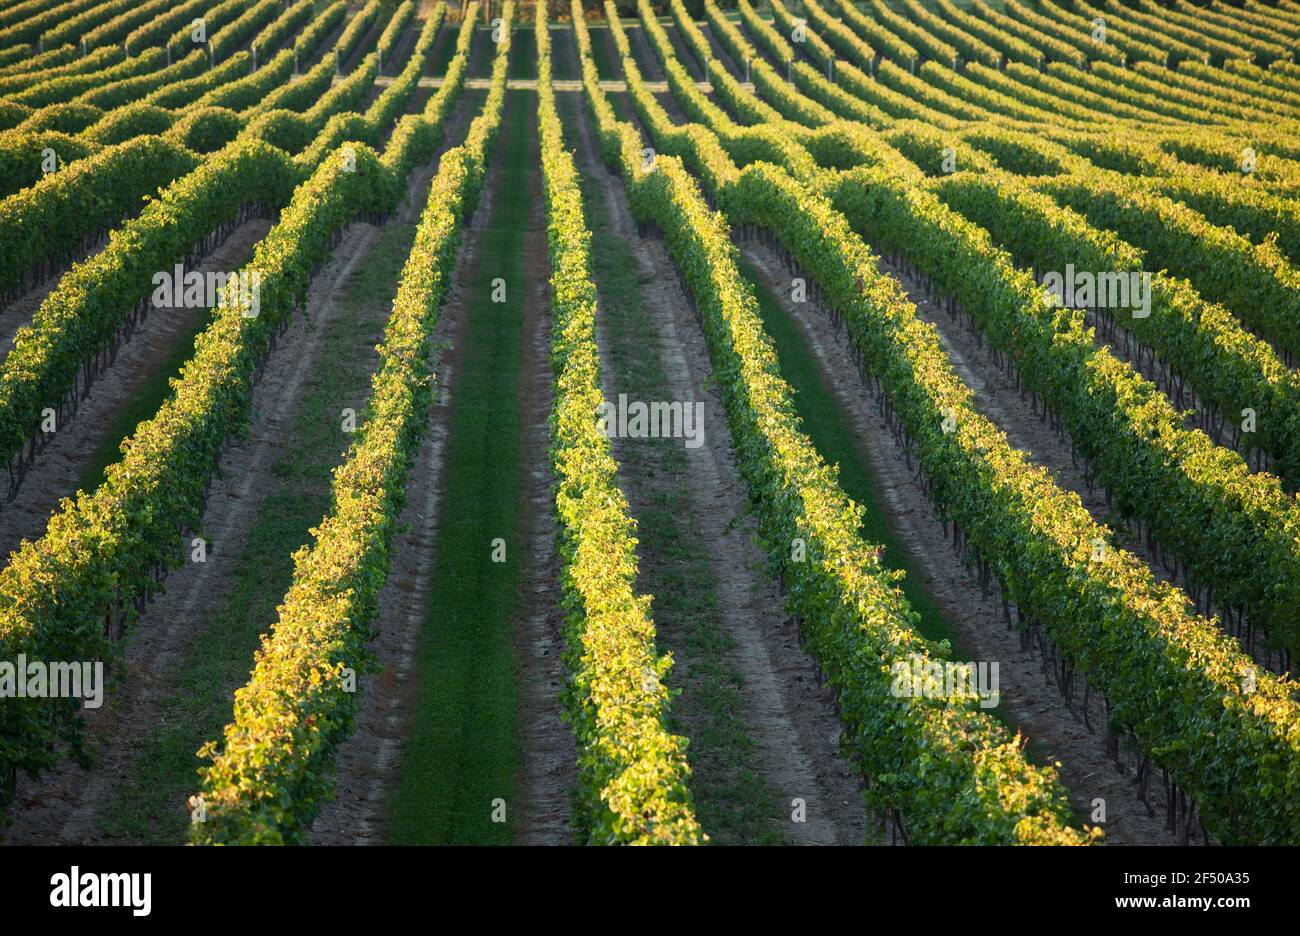 Kanada, Ontario, Beamsville, Reihen von Weinreben Stockfoto